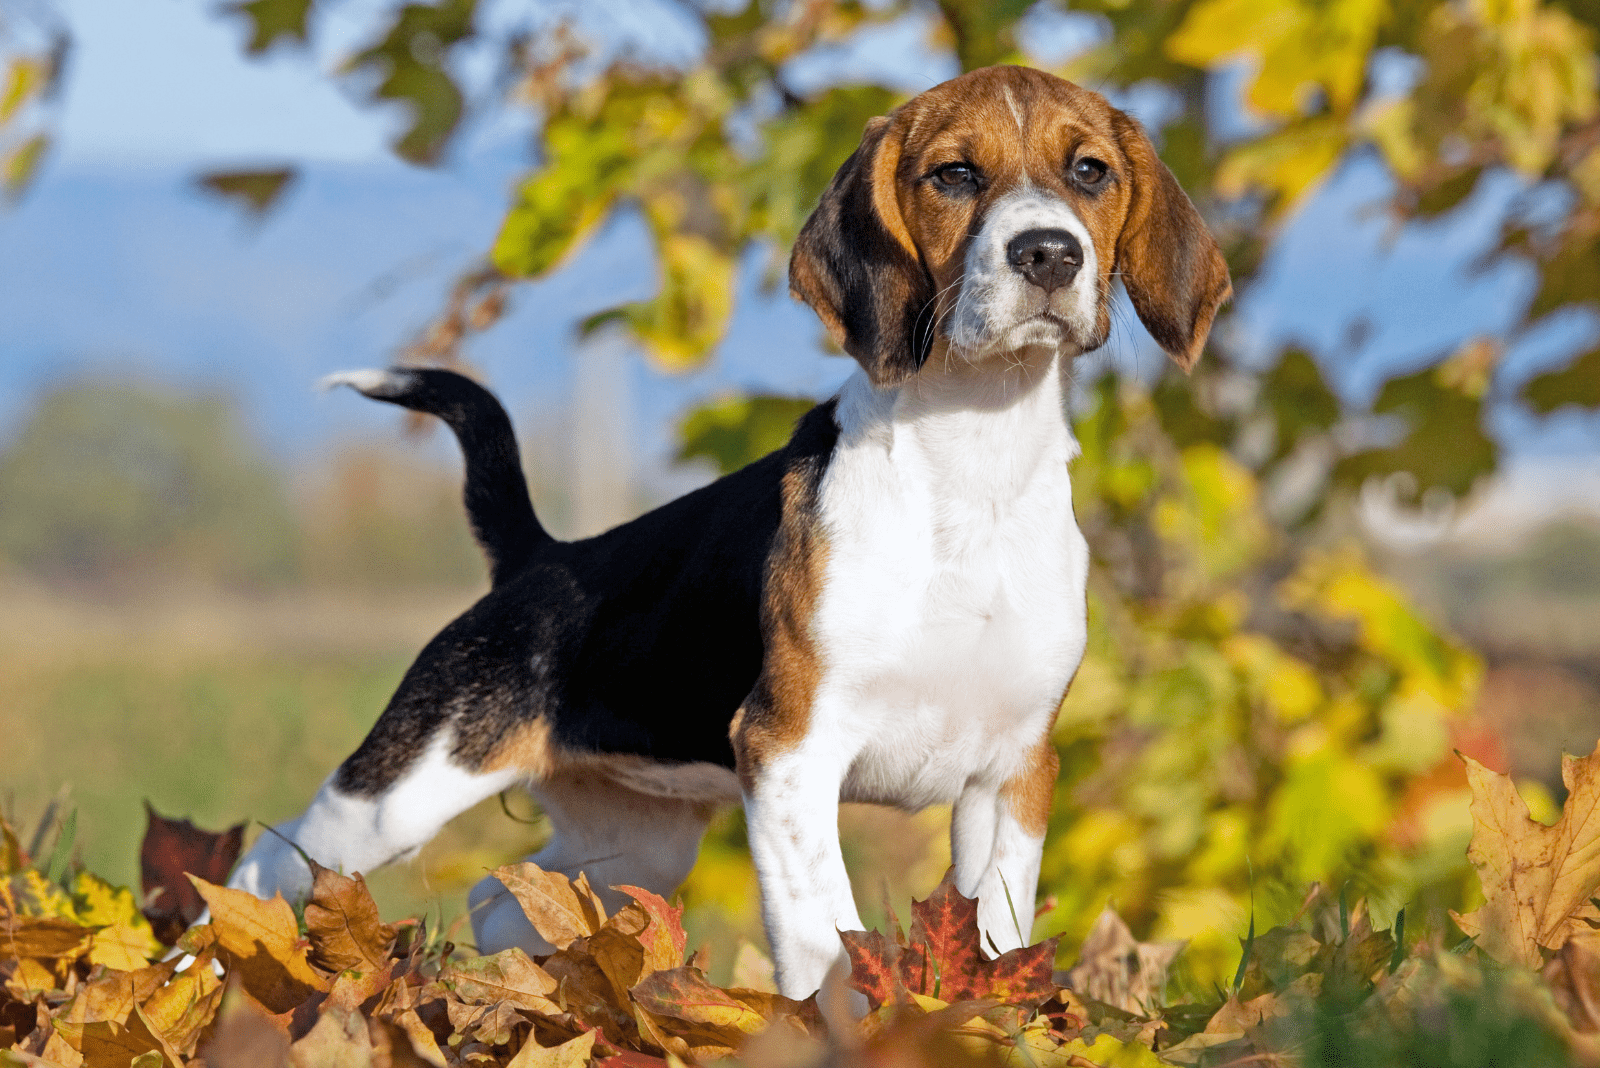 A beagle is standing in an autumn garden